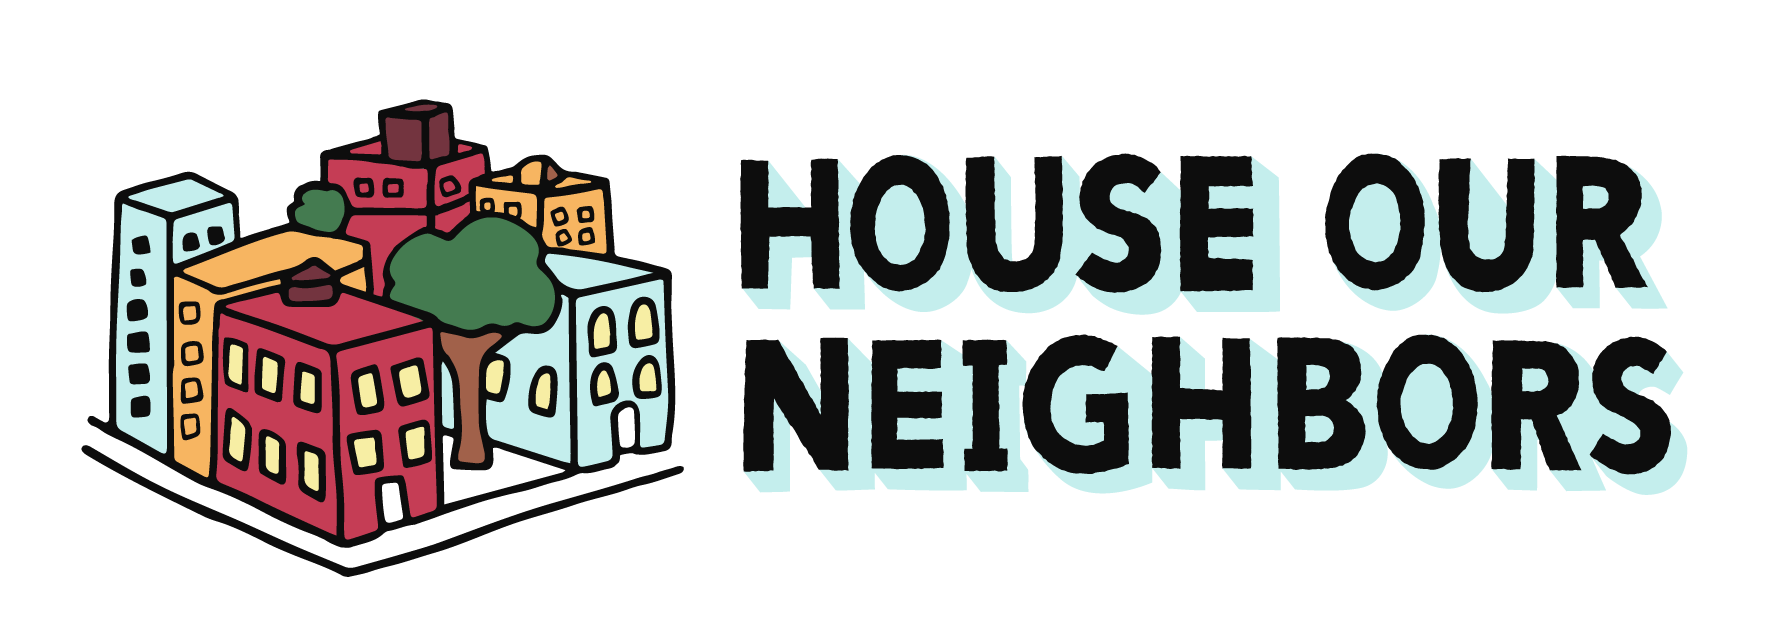 House Our Neighbors! logo